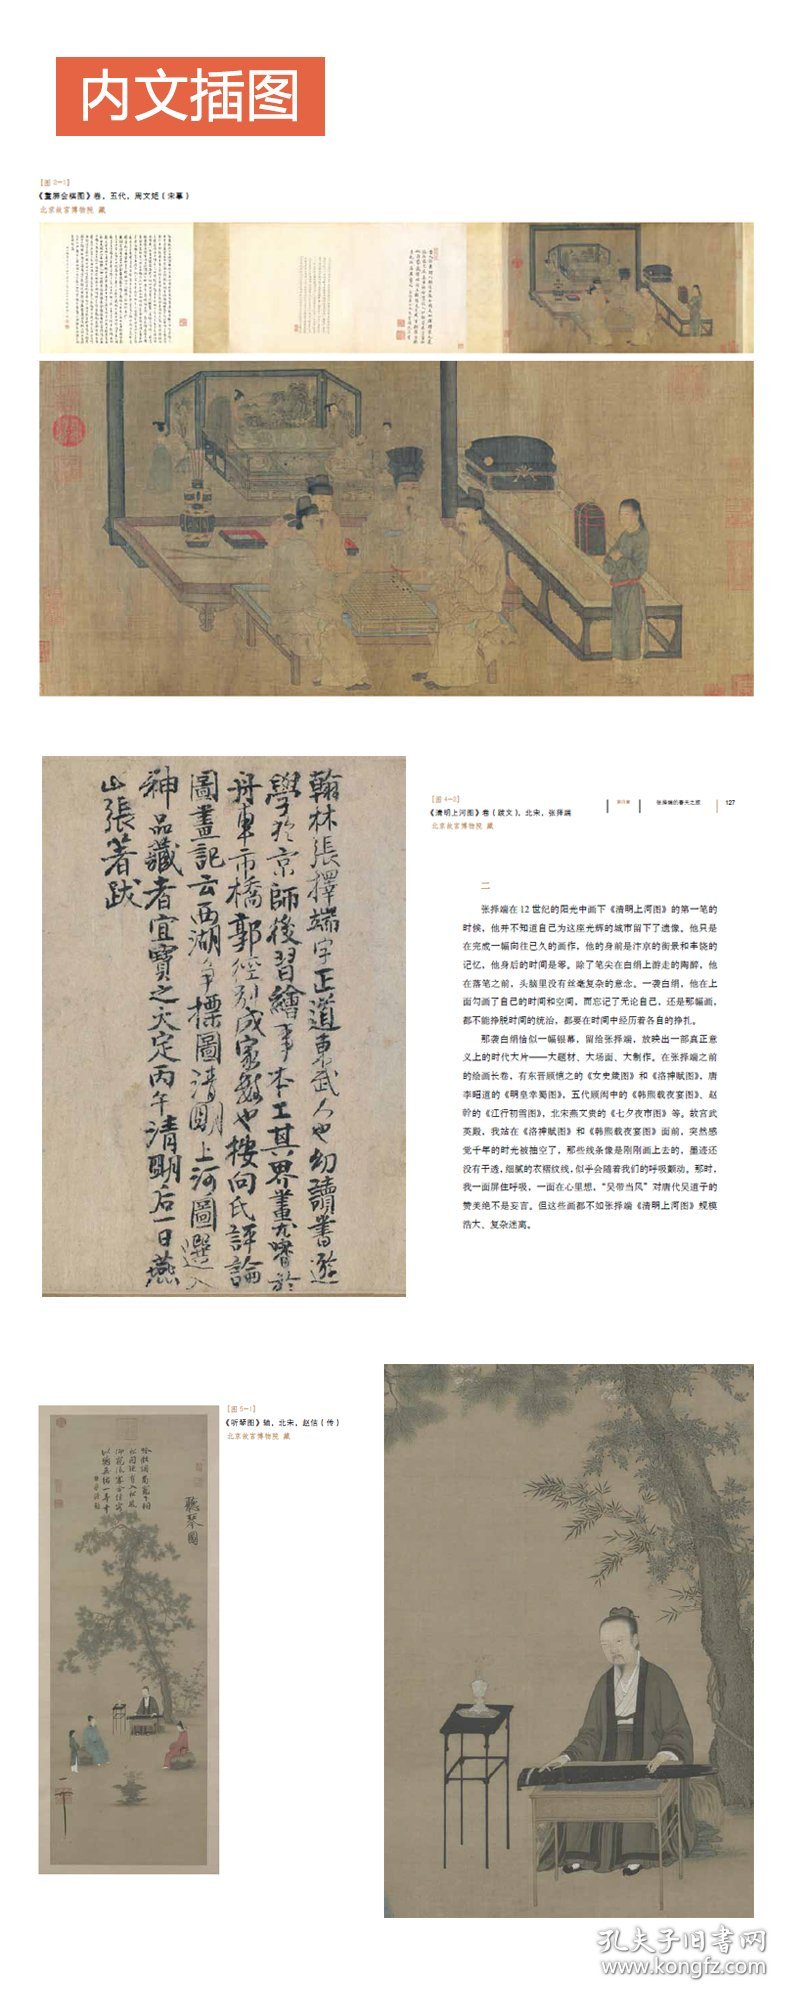 【正版书籍】故宫的古画之美美术画册